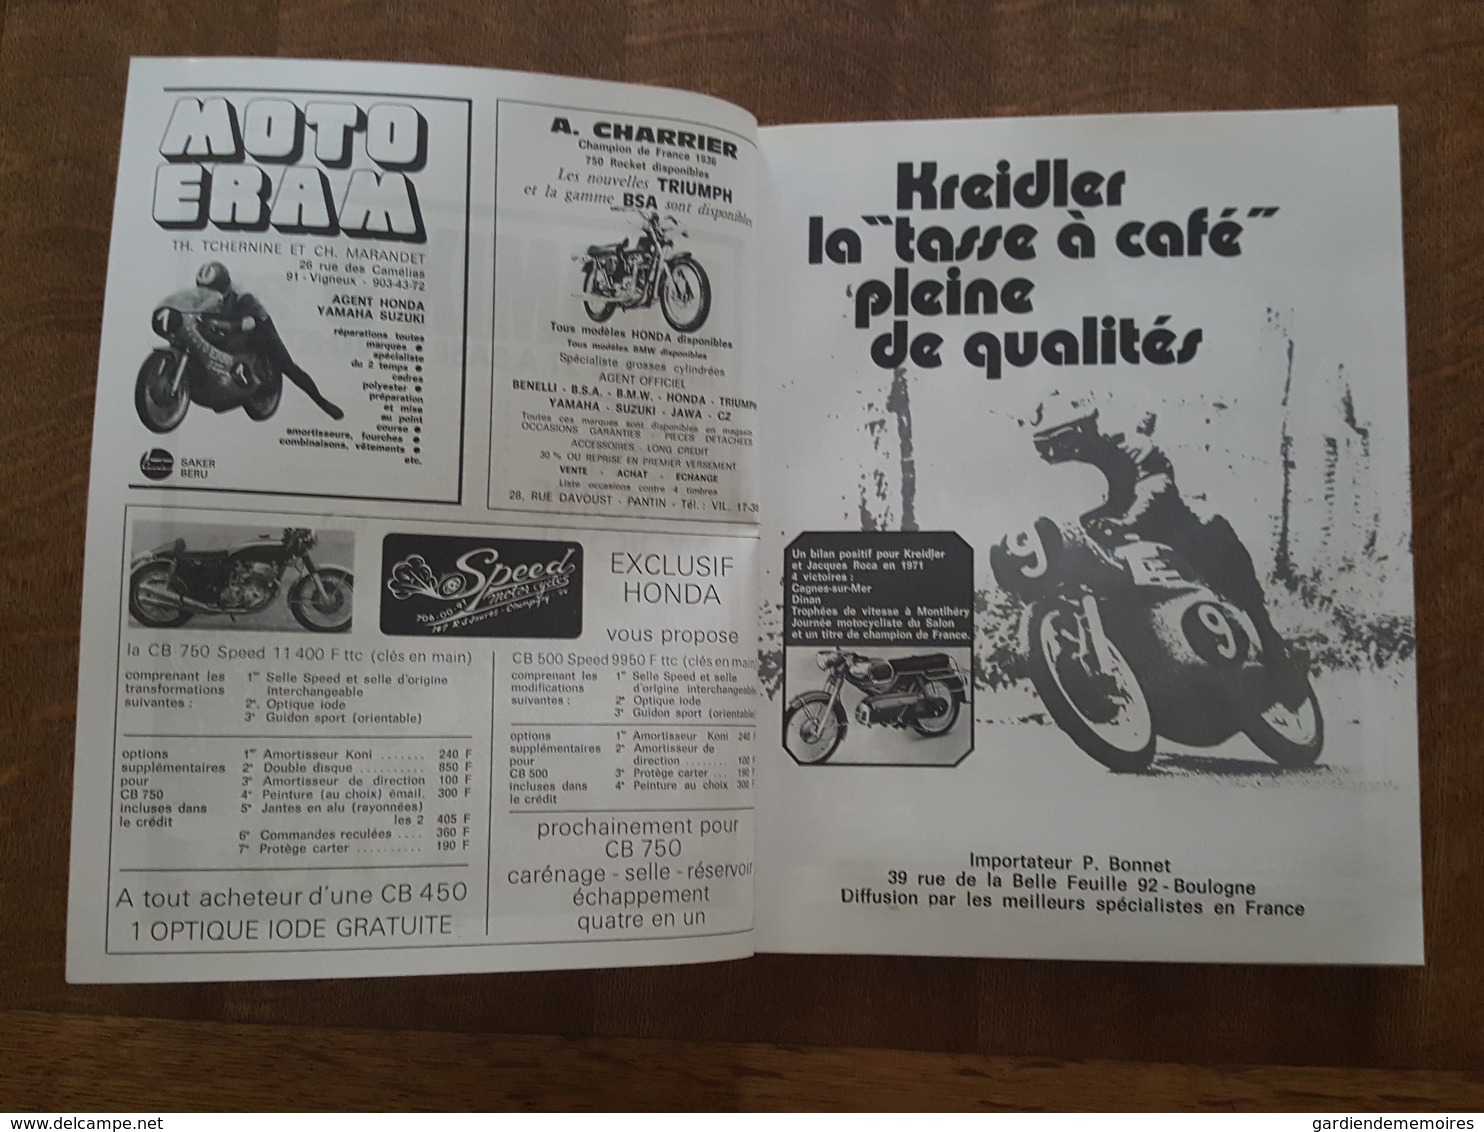 Moto Revue Spécial Salon 72 - Toutes les Motos du Monde, 200 Pages avec de superbe Pubs, Honda, Yamaha, Triumph, Harley